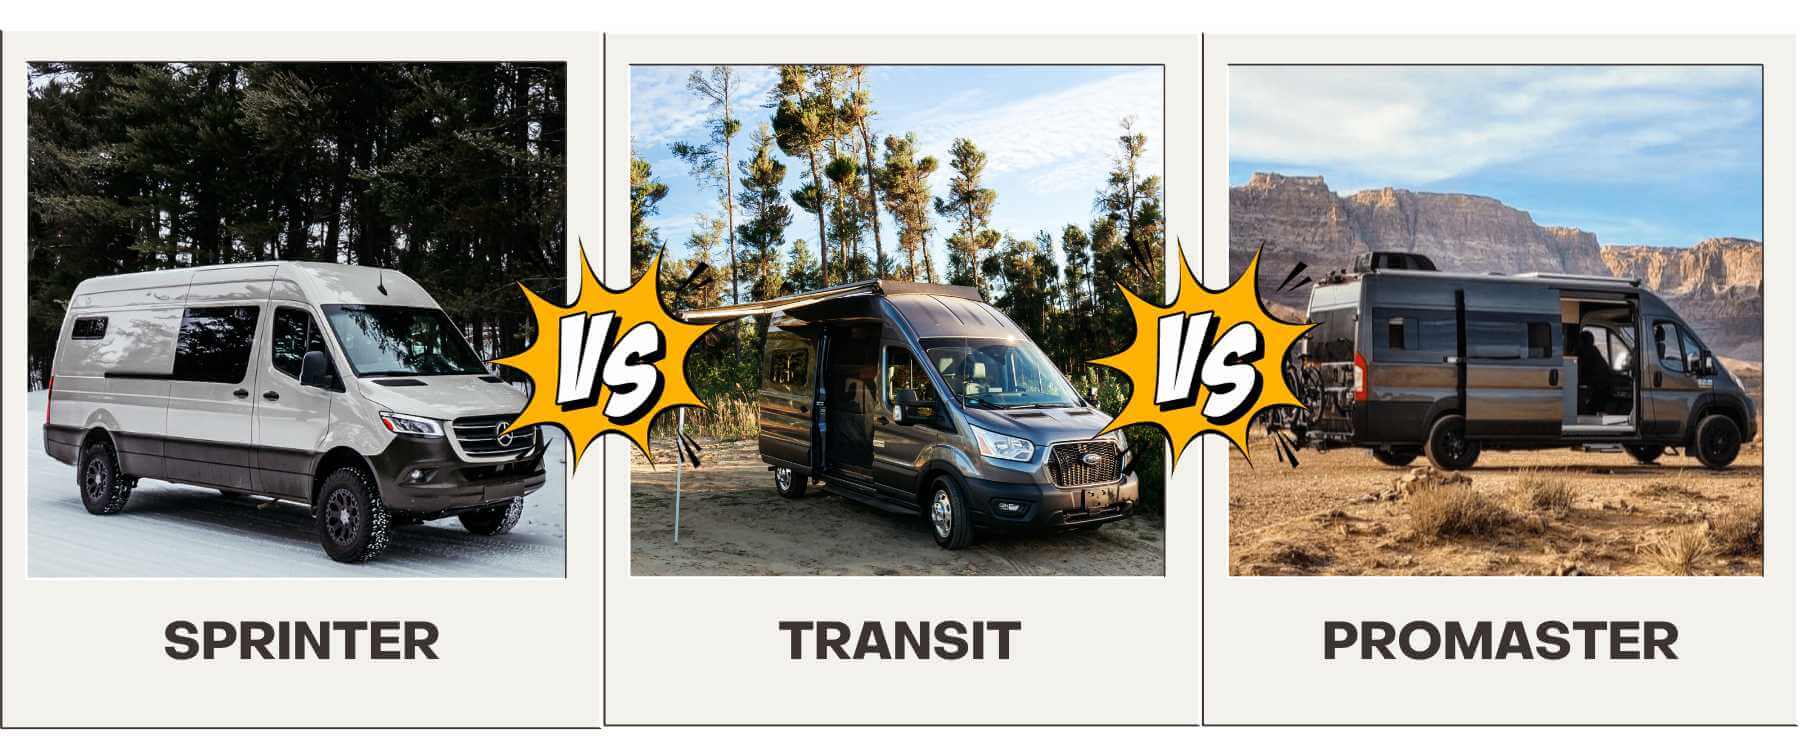 Living in a Van: Best Parts of Campervan Life